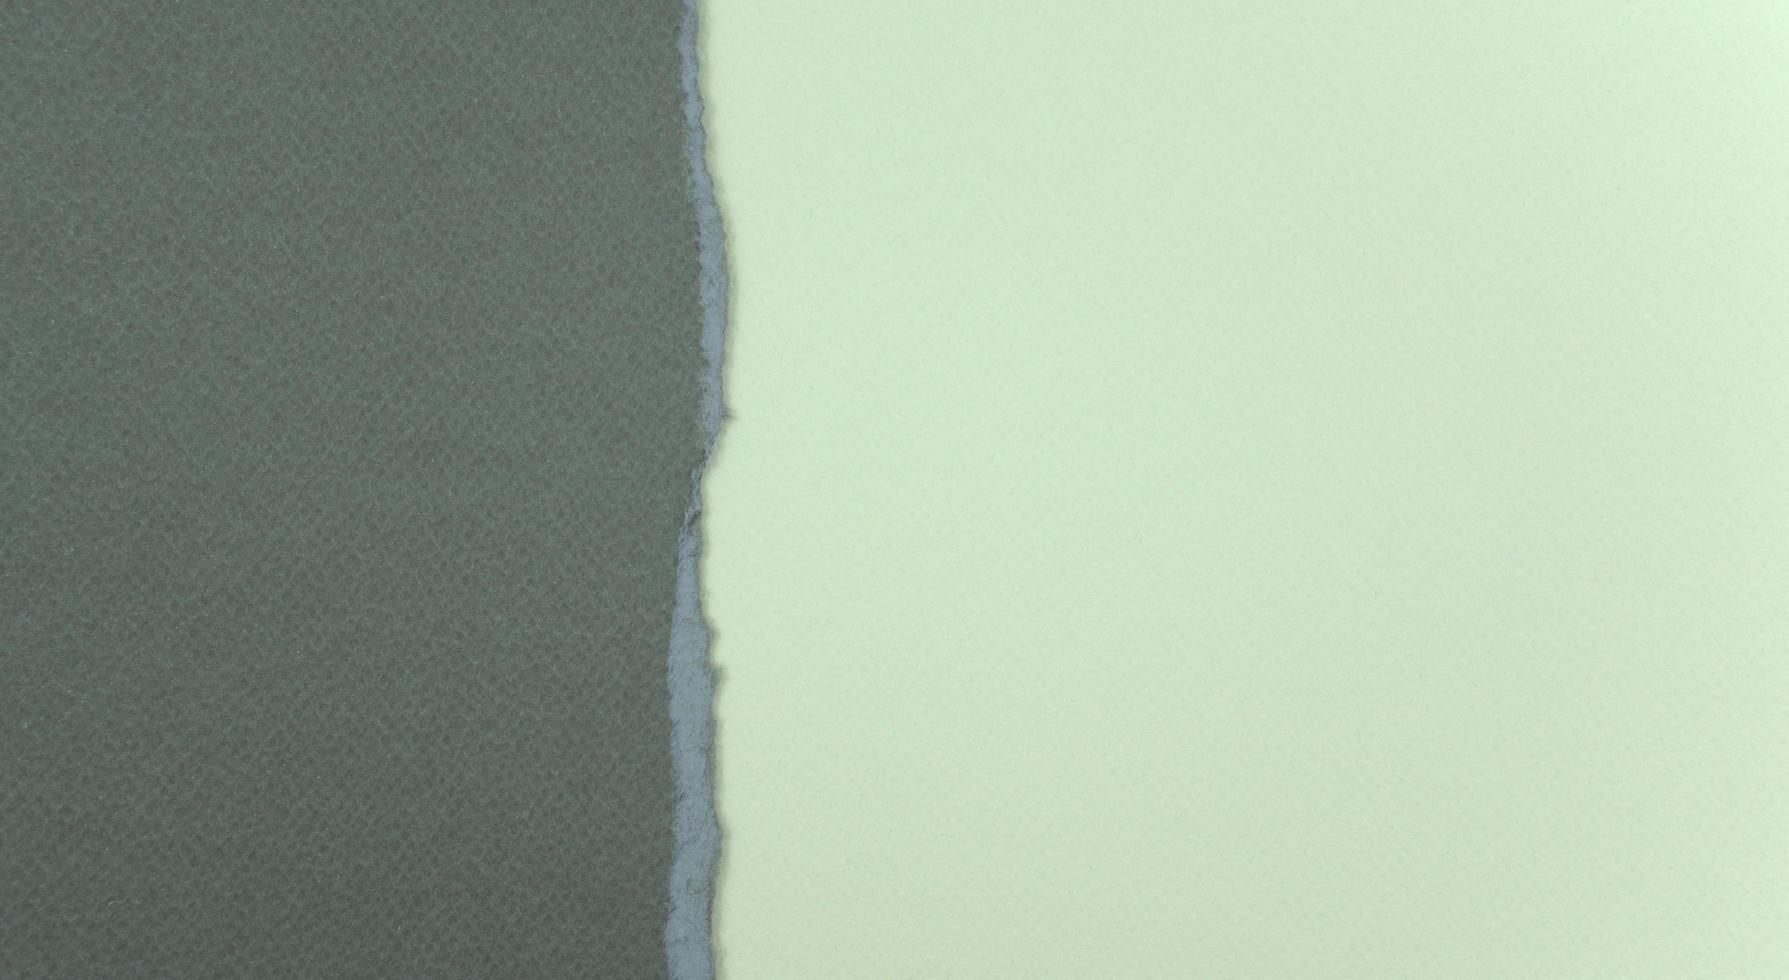 Fondo de papel triturado gris pastel neutro foto